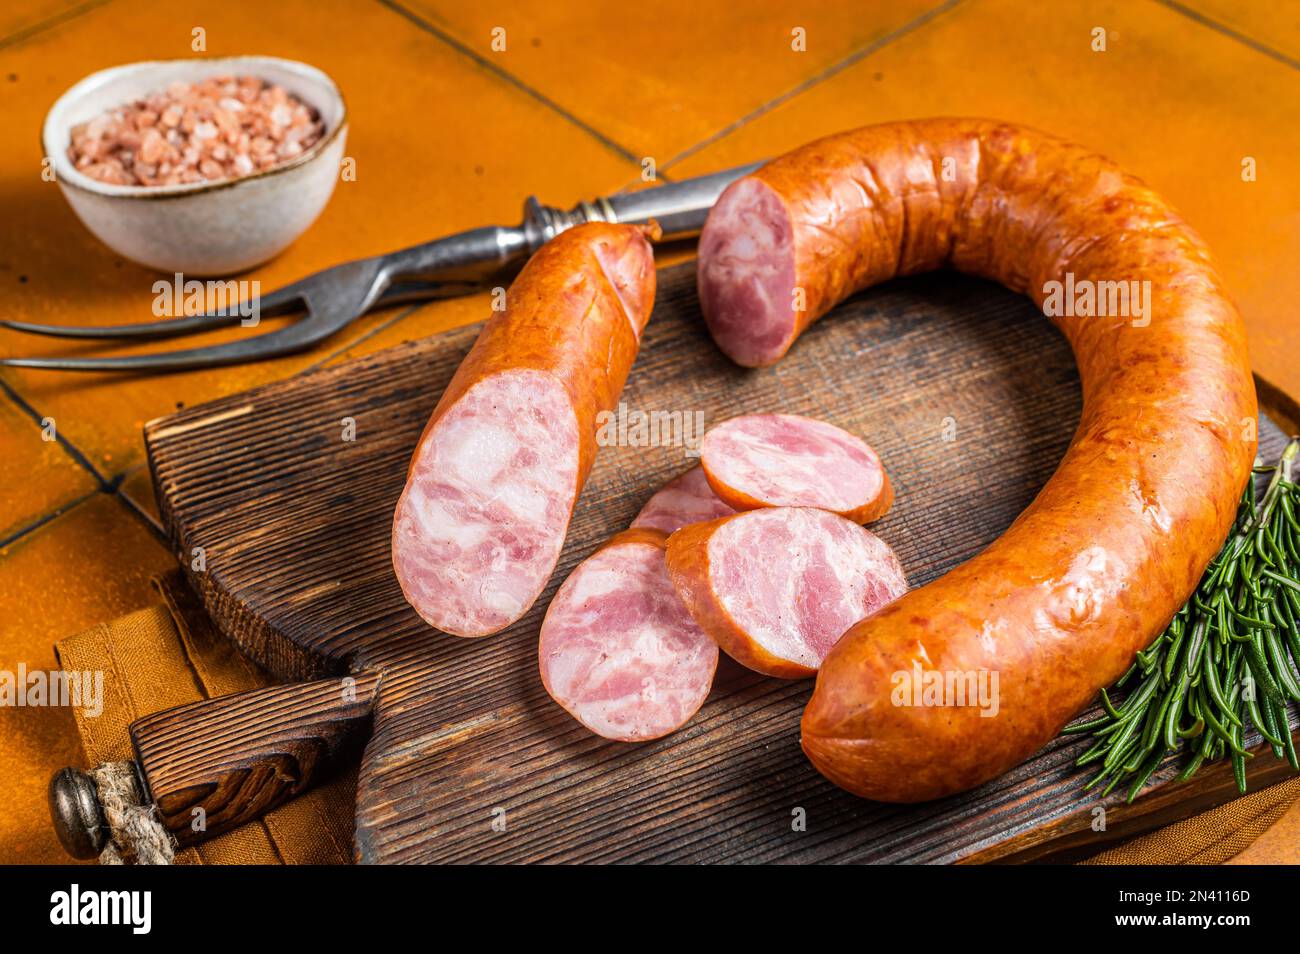 Krakau Räucherwurst mit Rosmarin und Gewürzen auf einem Holzbrett.  Orangefarbener Hintergrund. Draufsicht Stockfotografie - Alamy